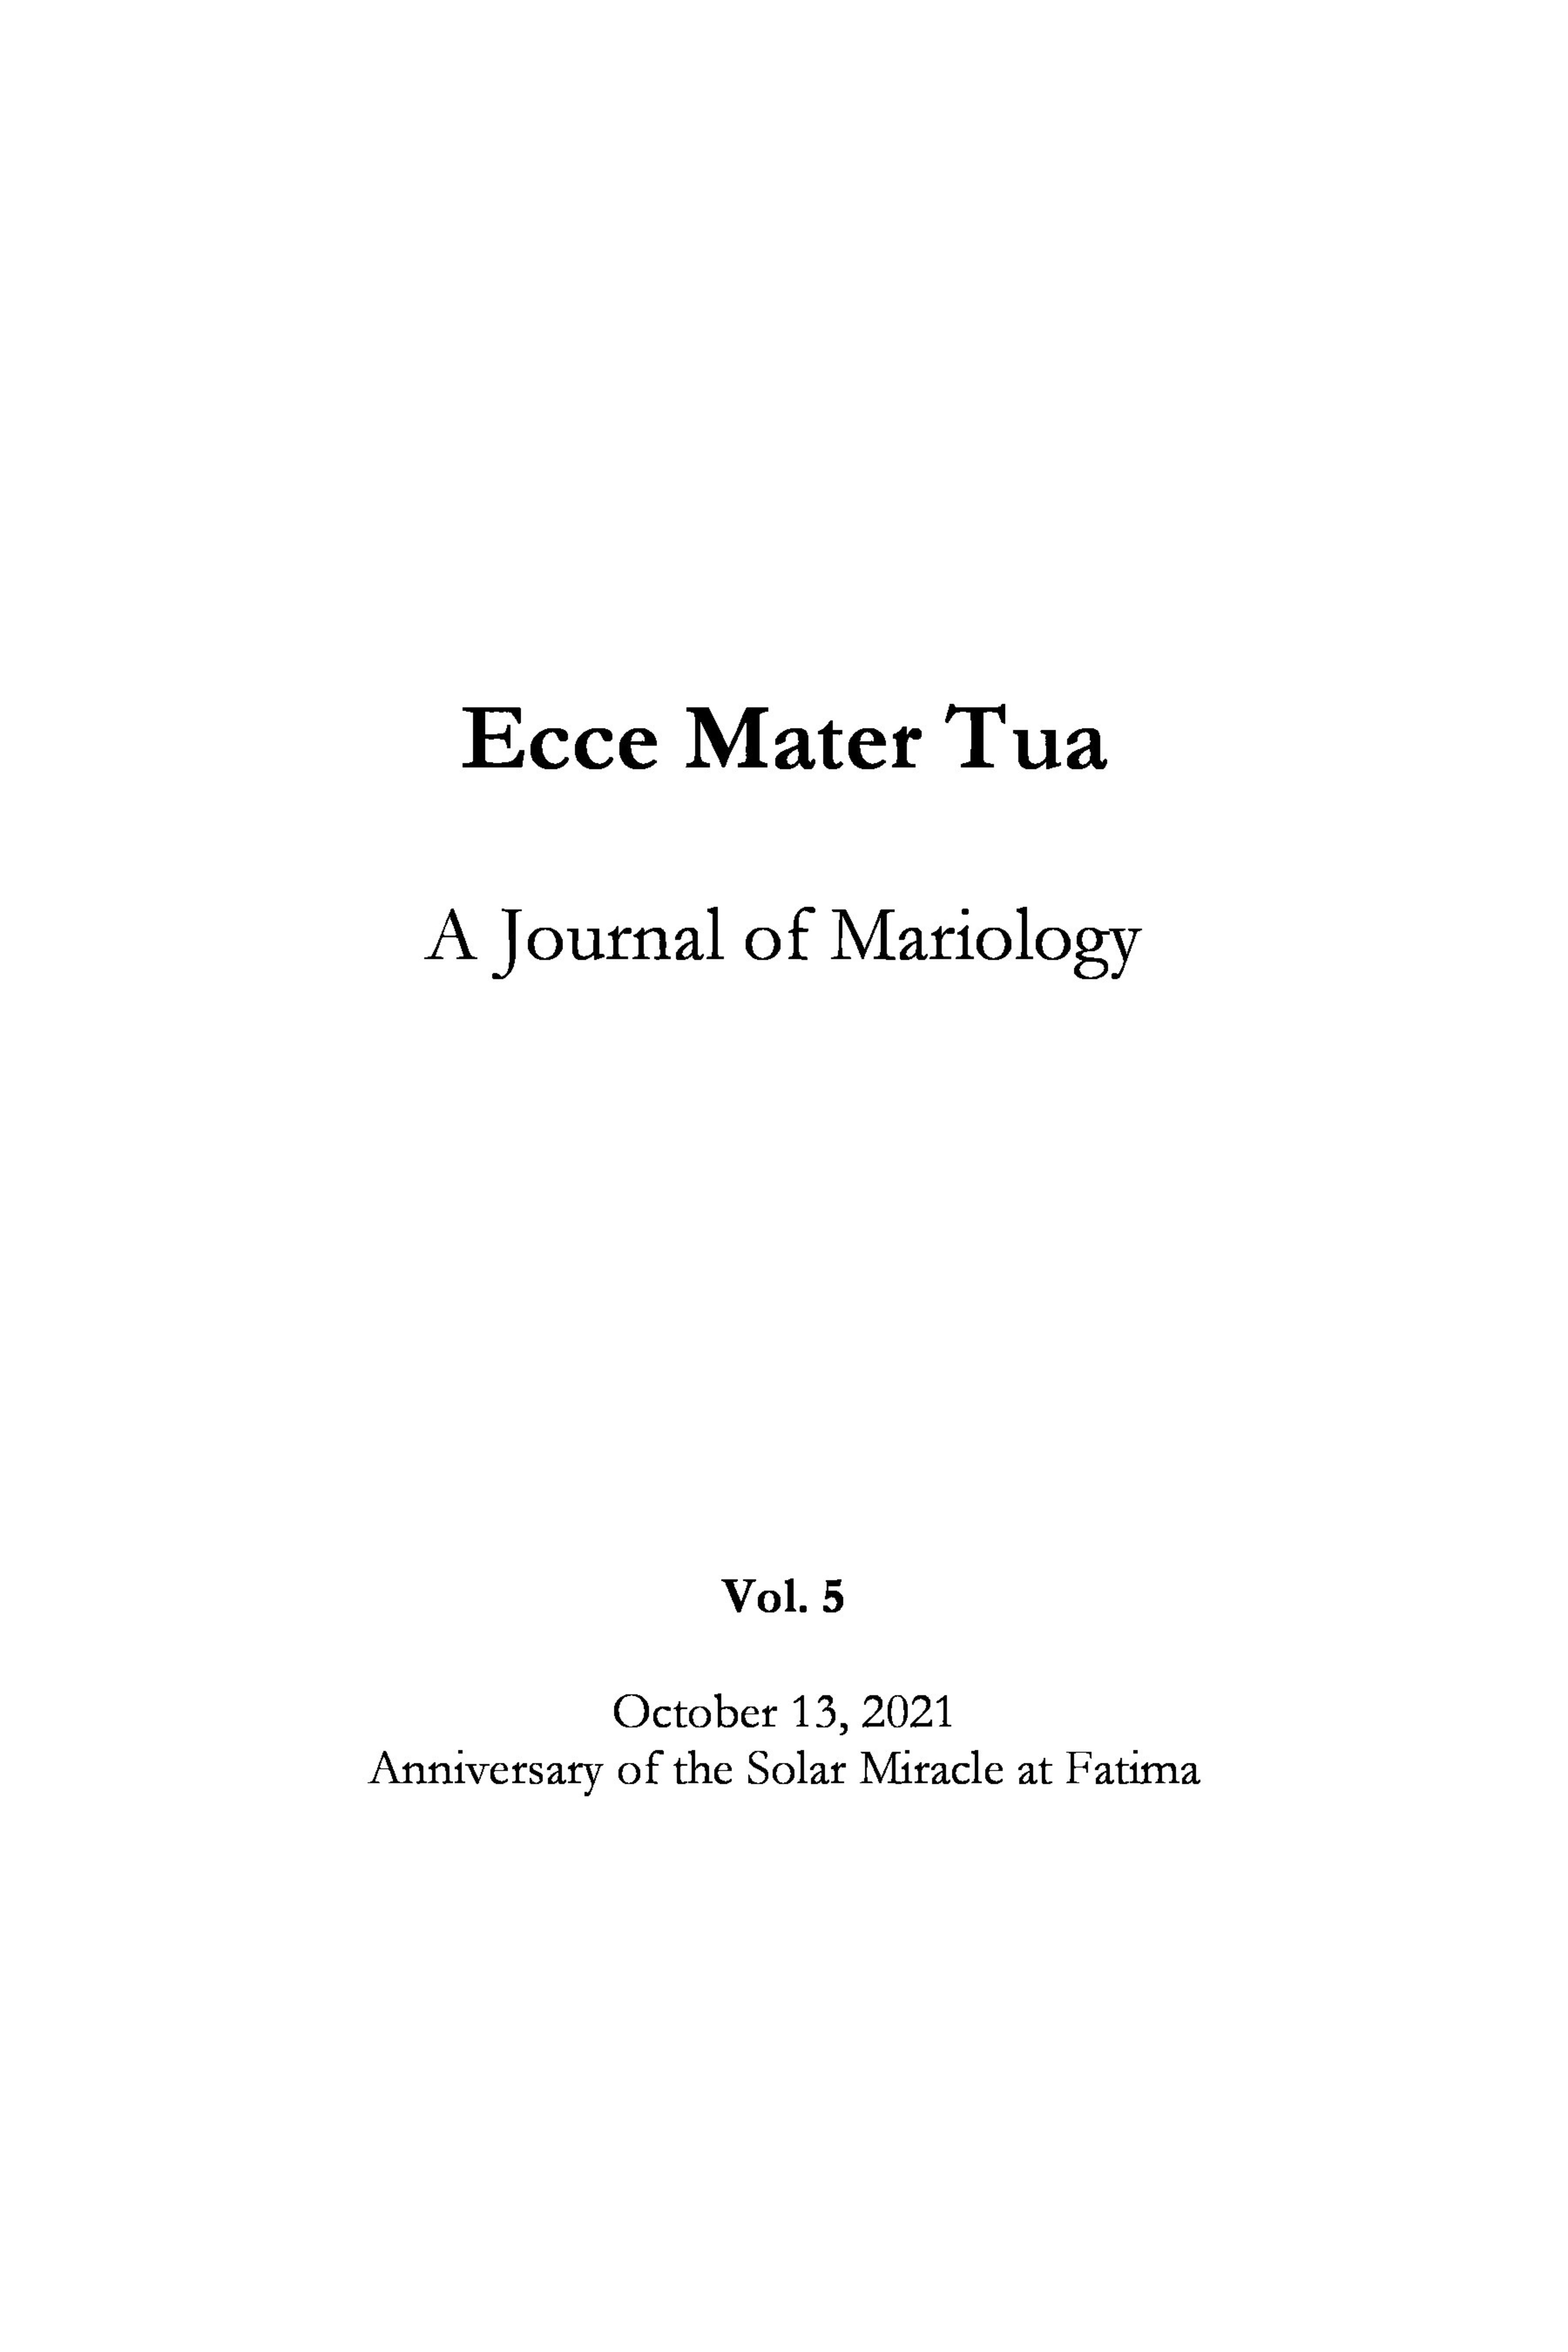 Ecce Mater Tua vol. 5